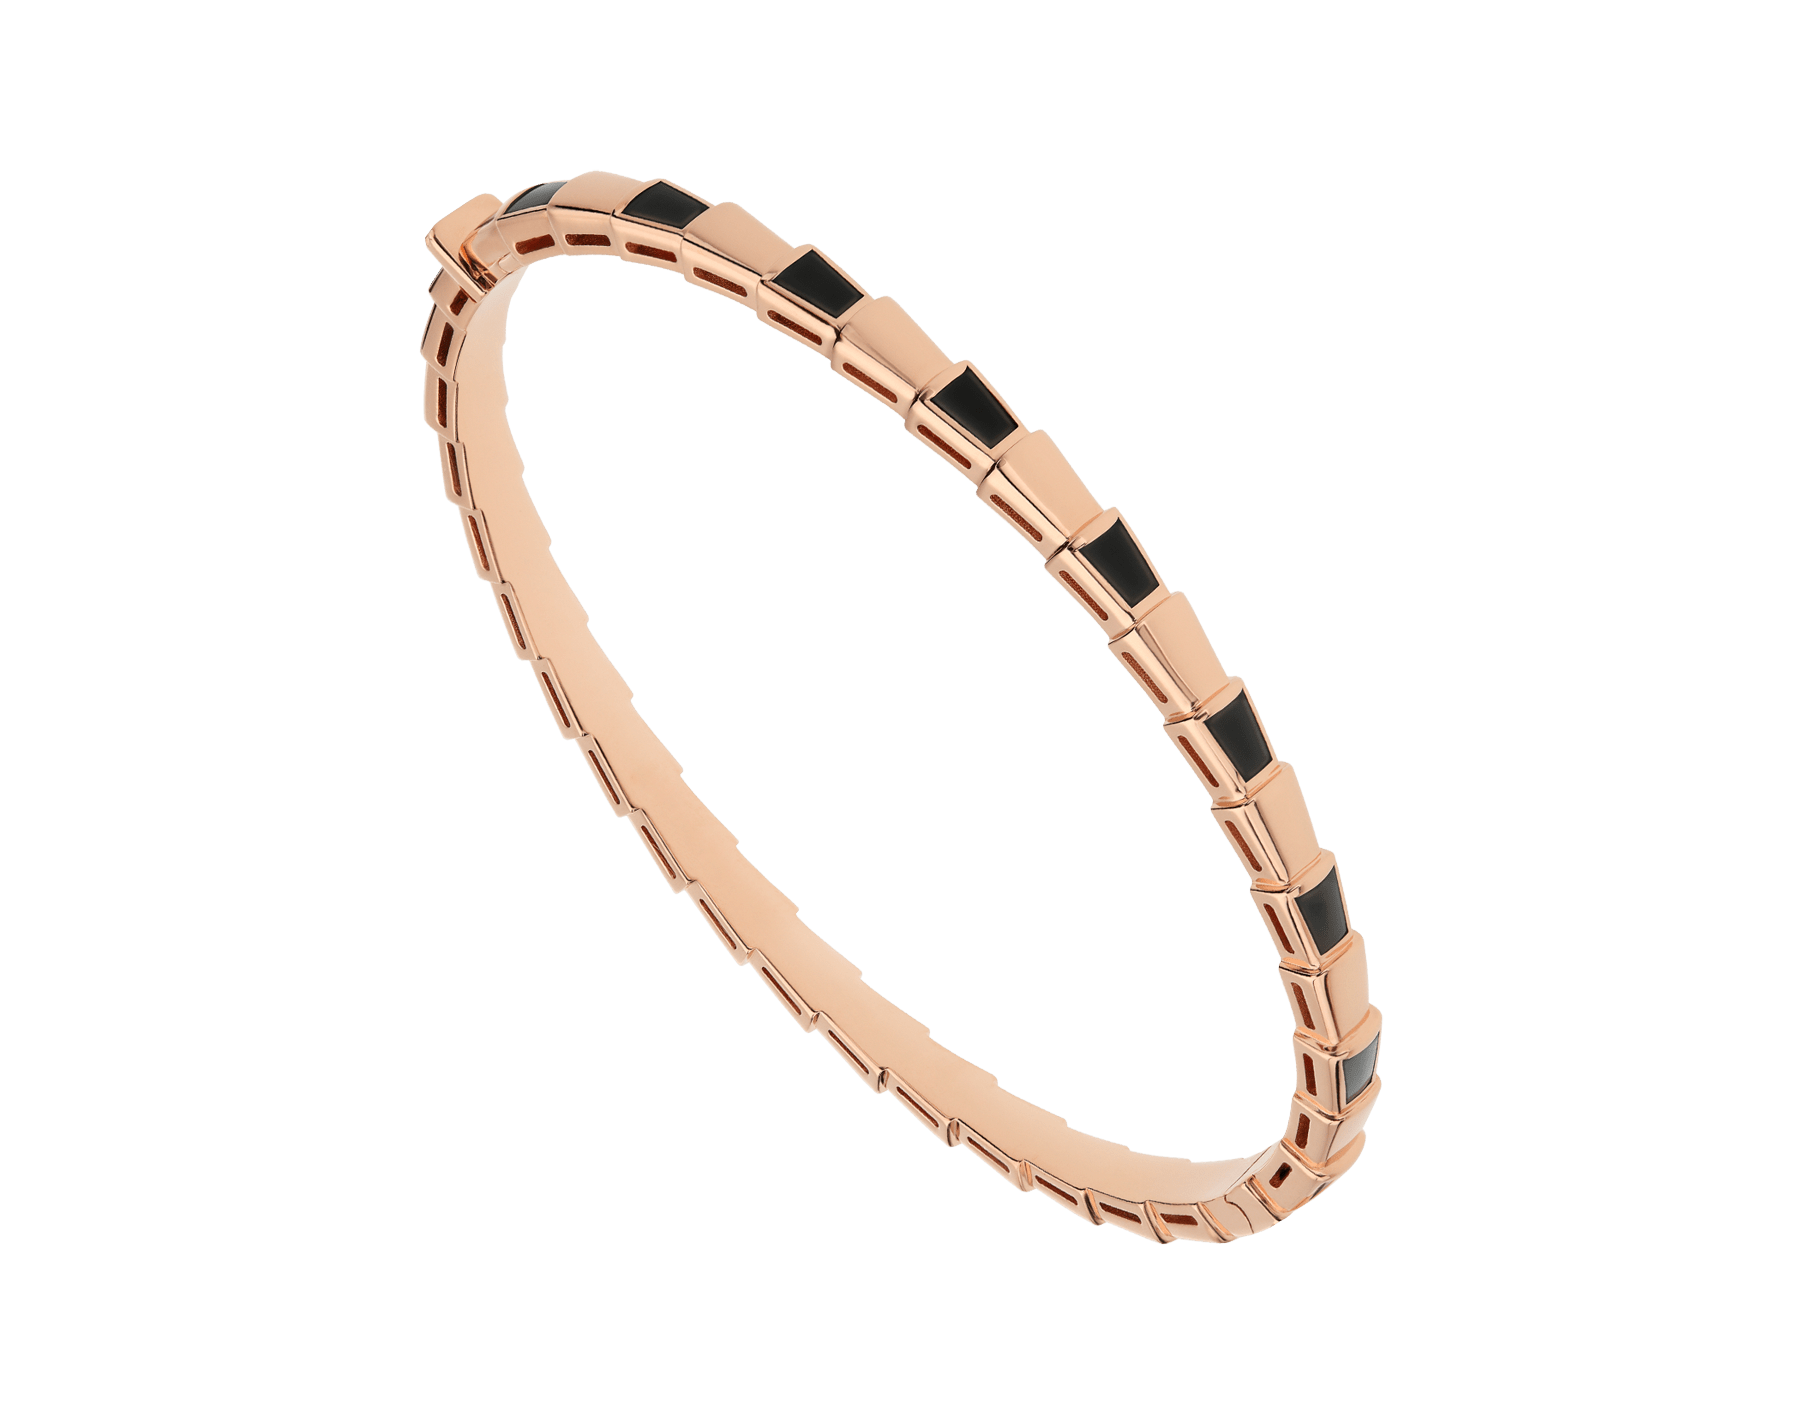 bulgari snake bracelet